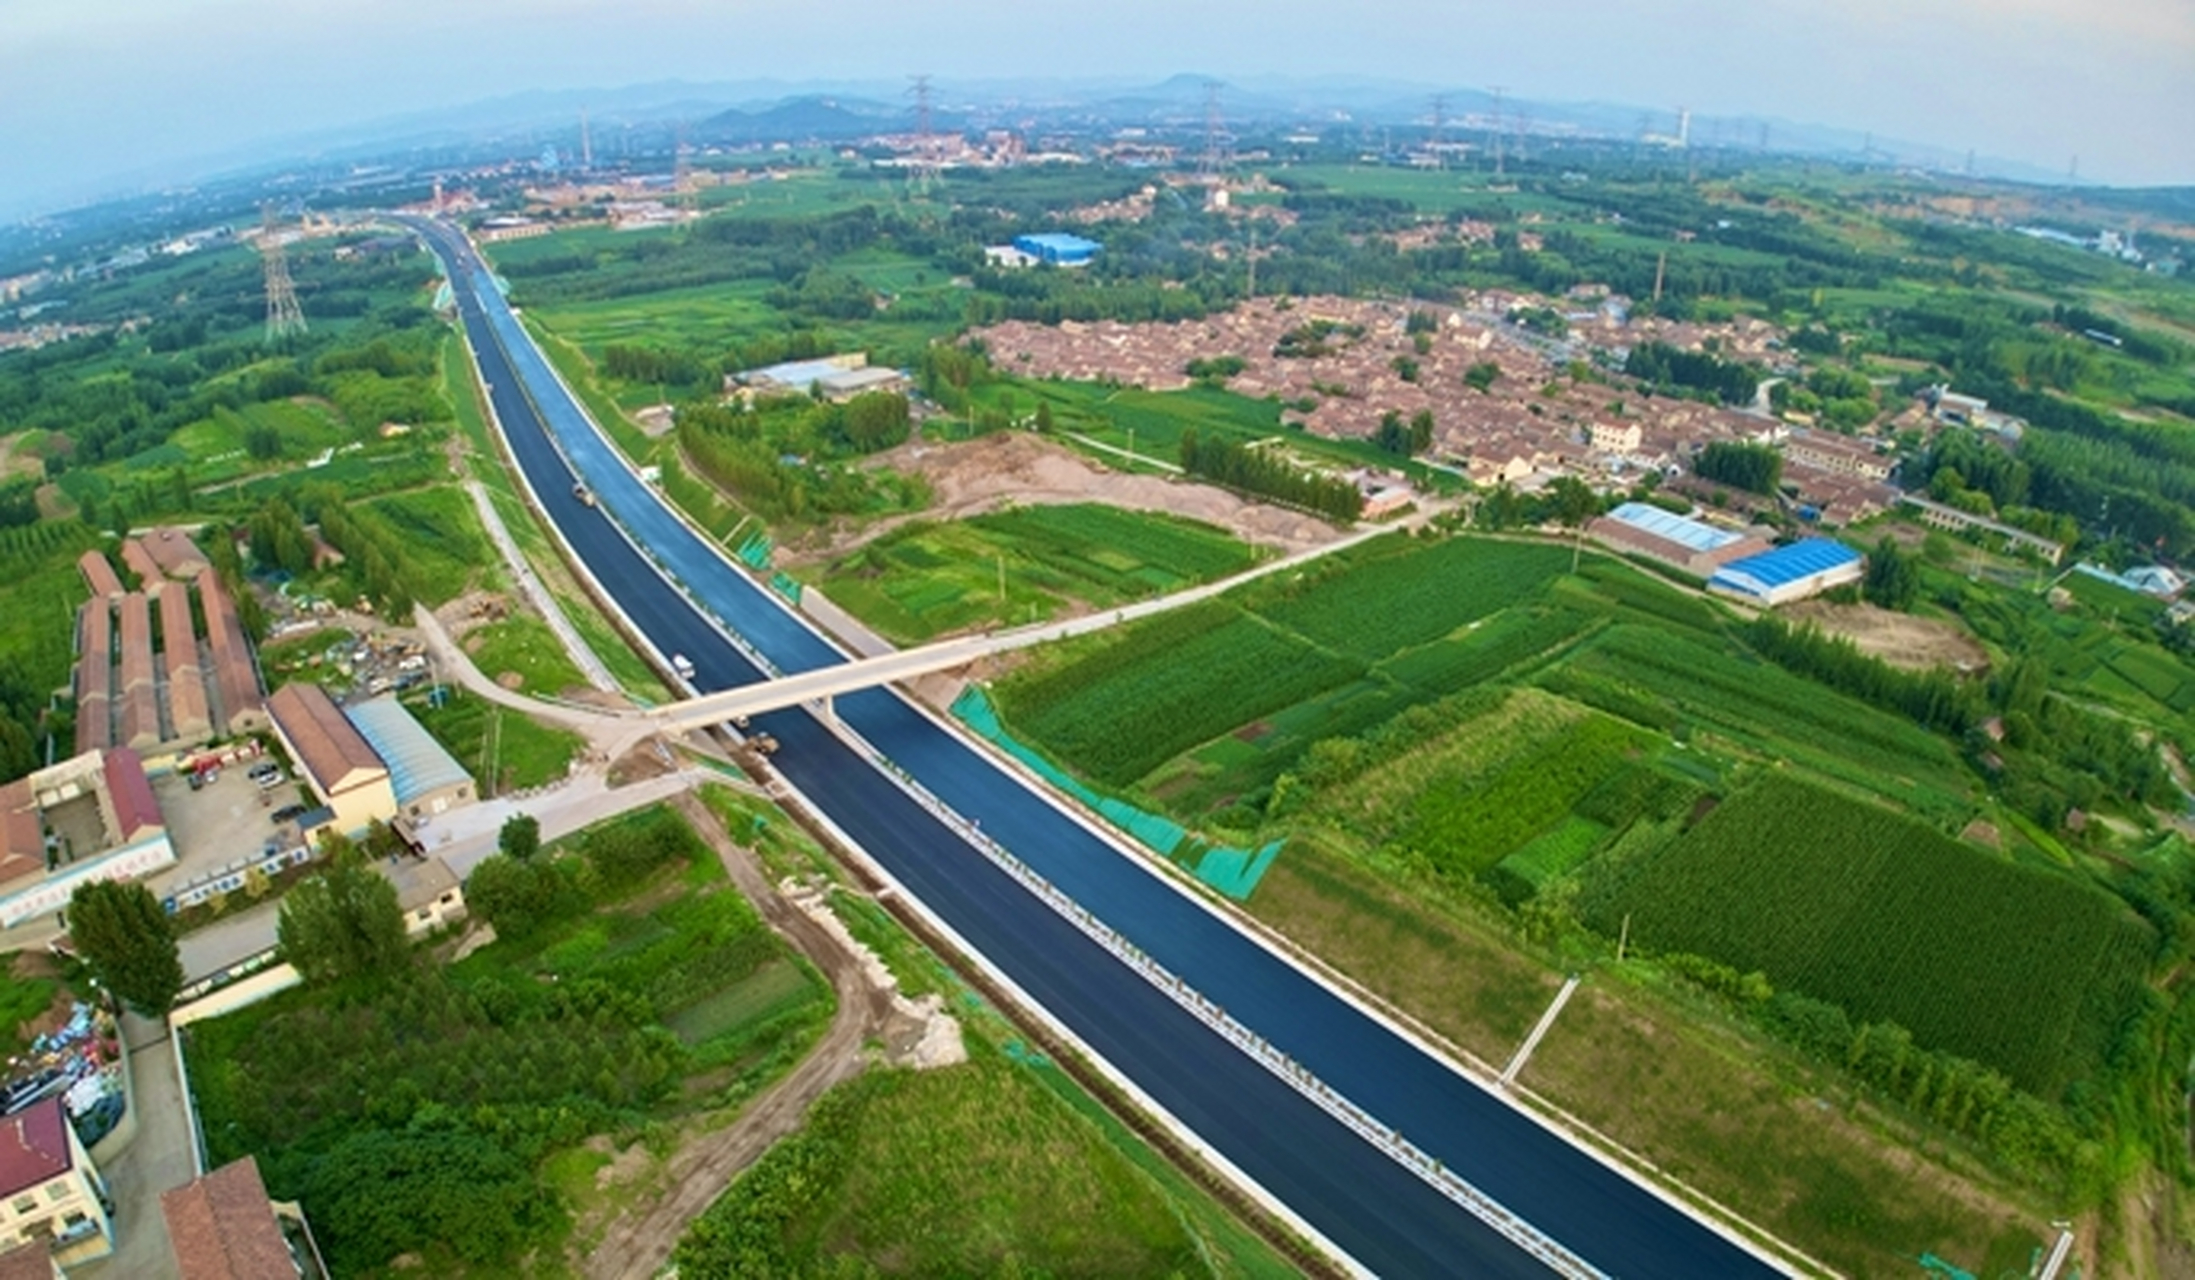 济潍高速淄川段图片